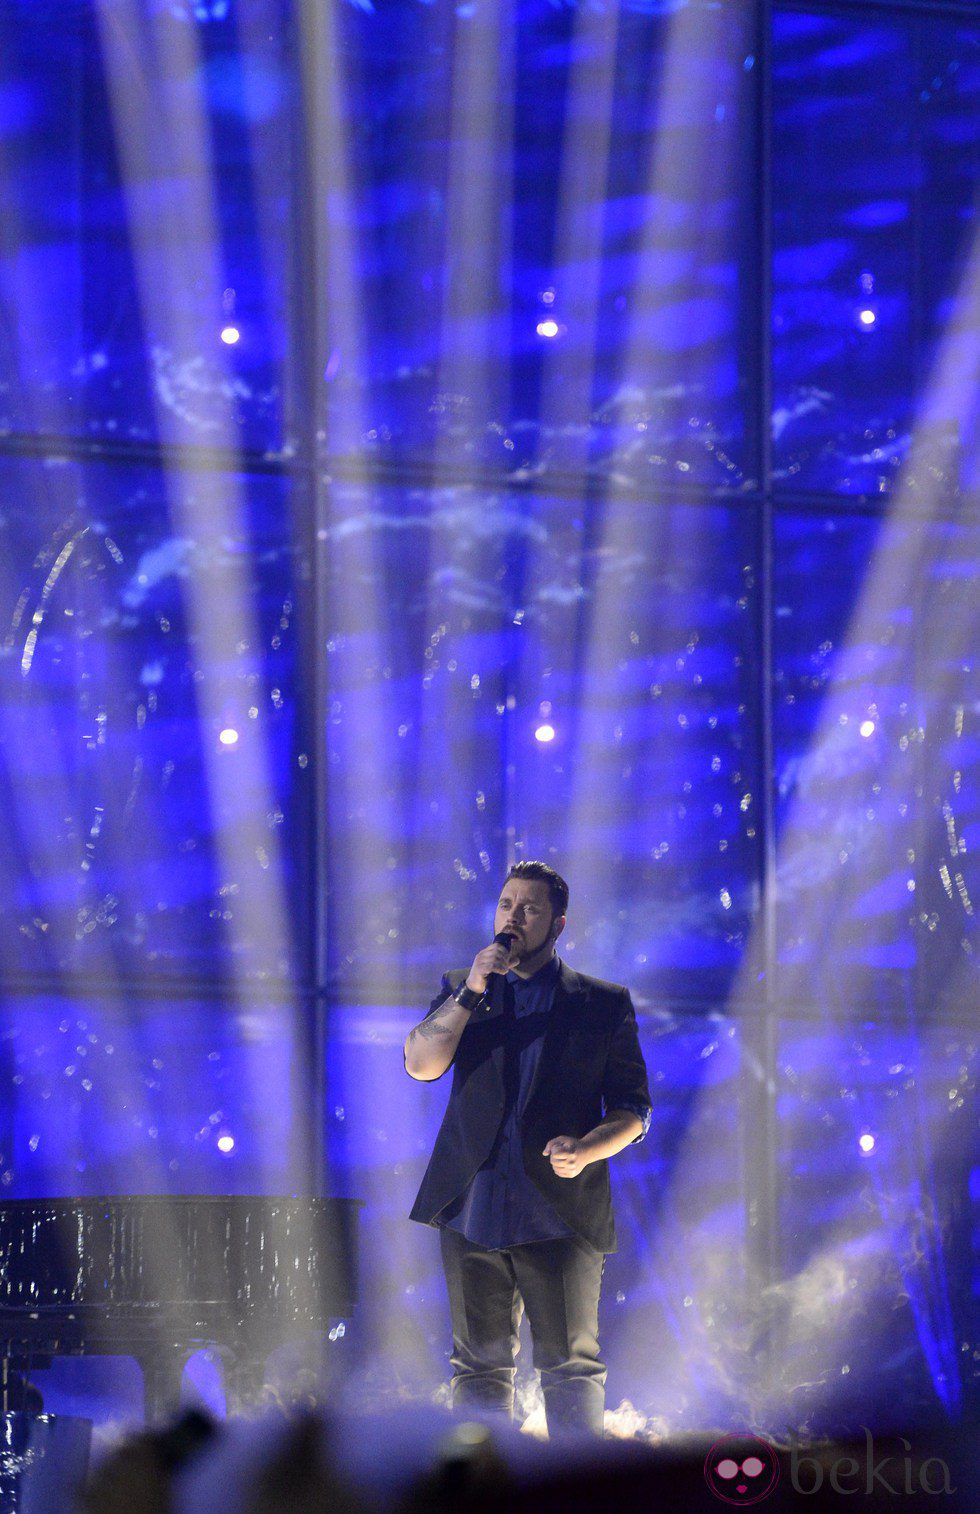 Carl Espen durante su actuación en el Festival de Eurovisión 2014